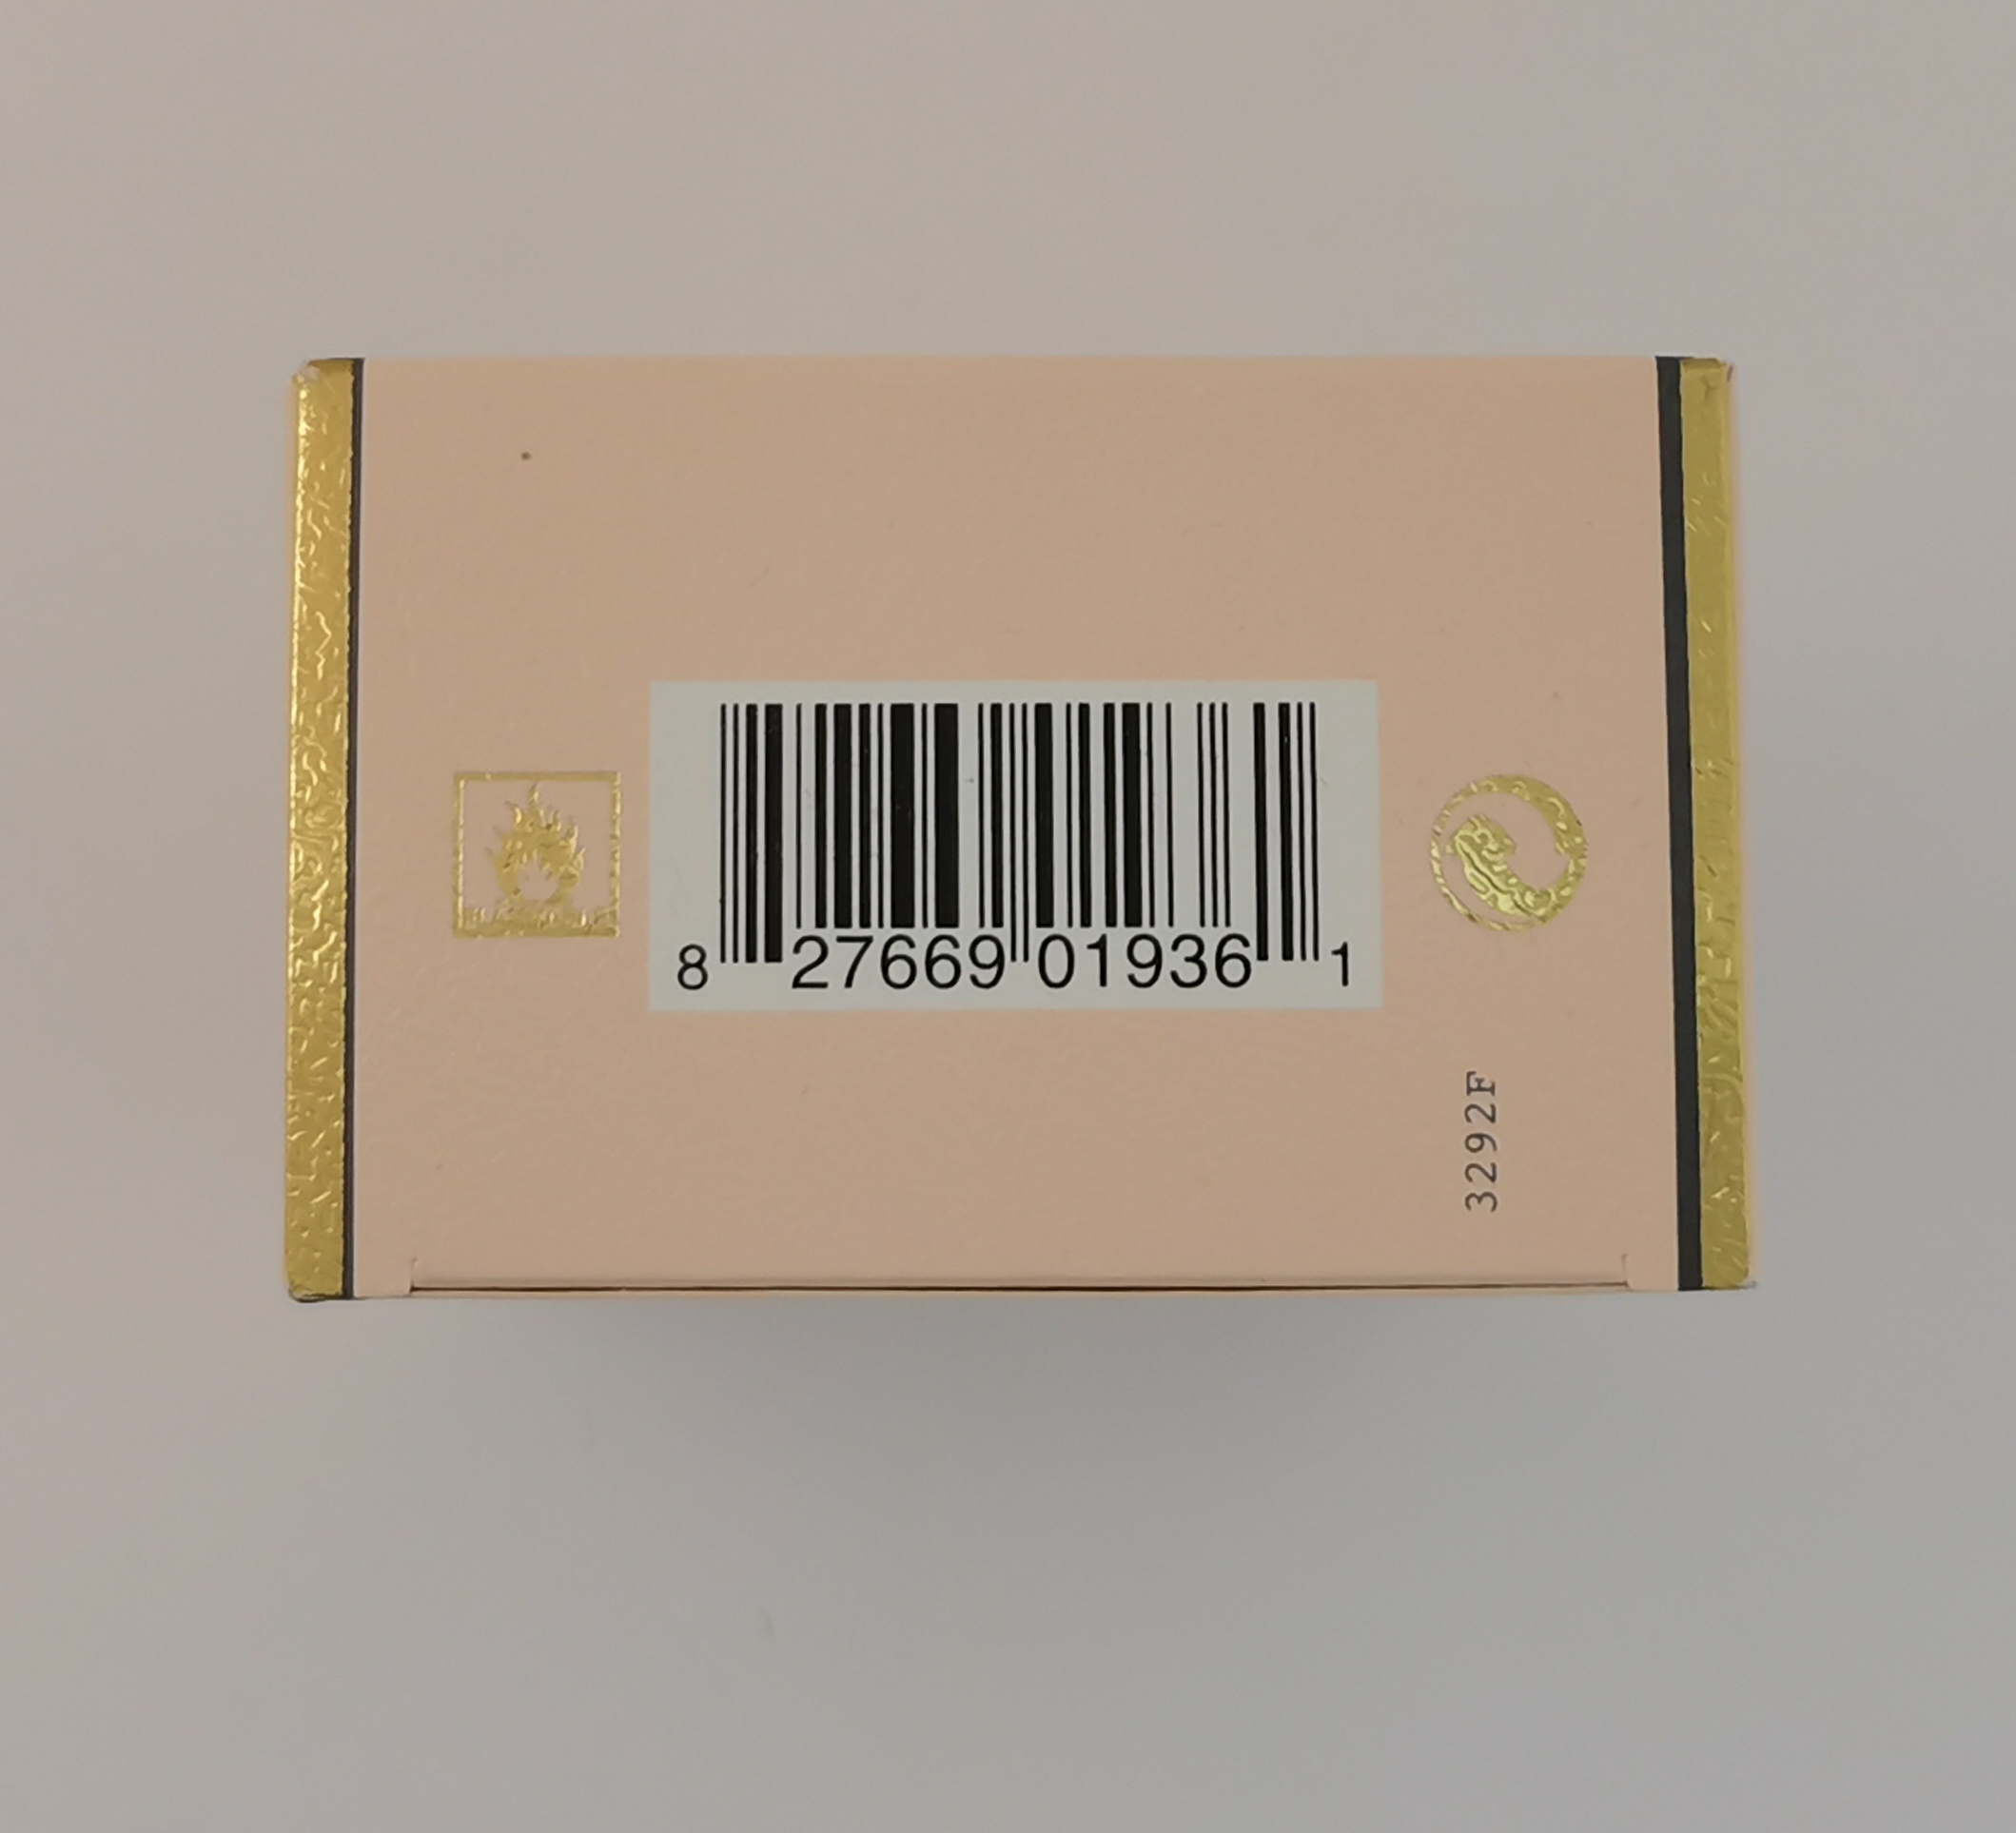 Одеколон 100&nbsp;мл - фото штрих-кода и батч-кода на коробке